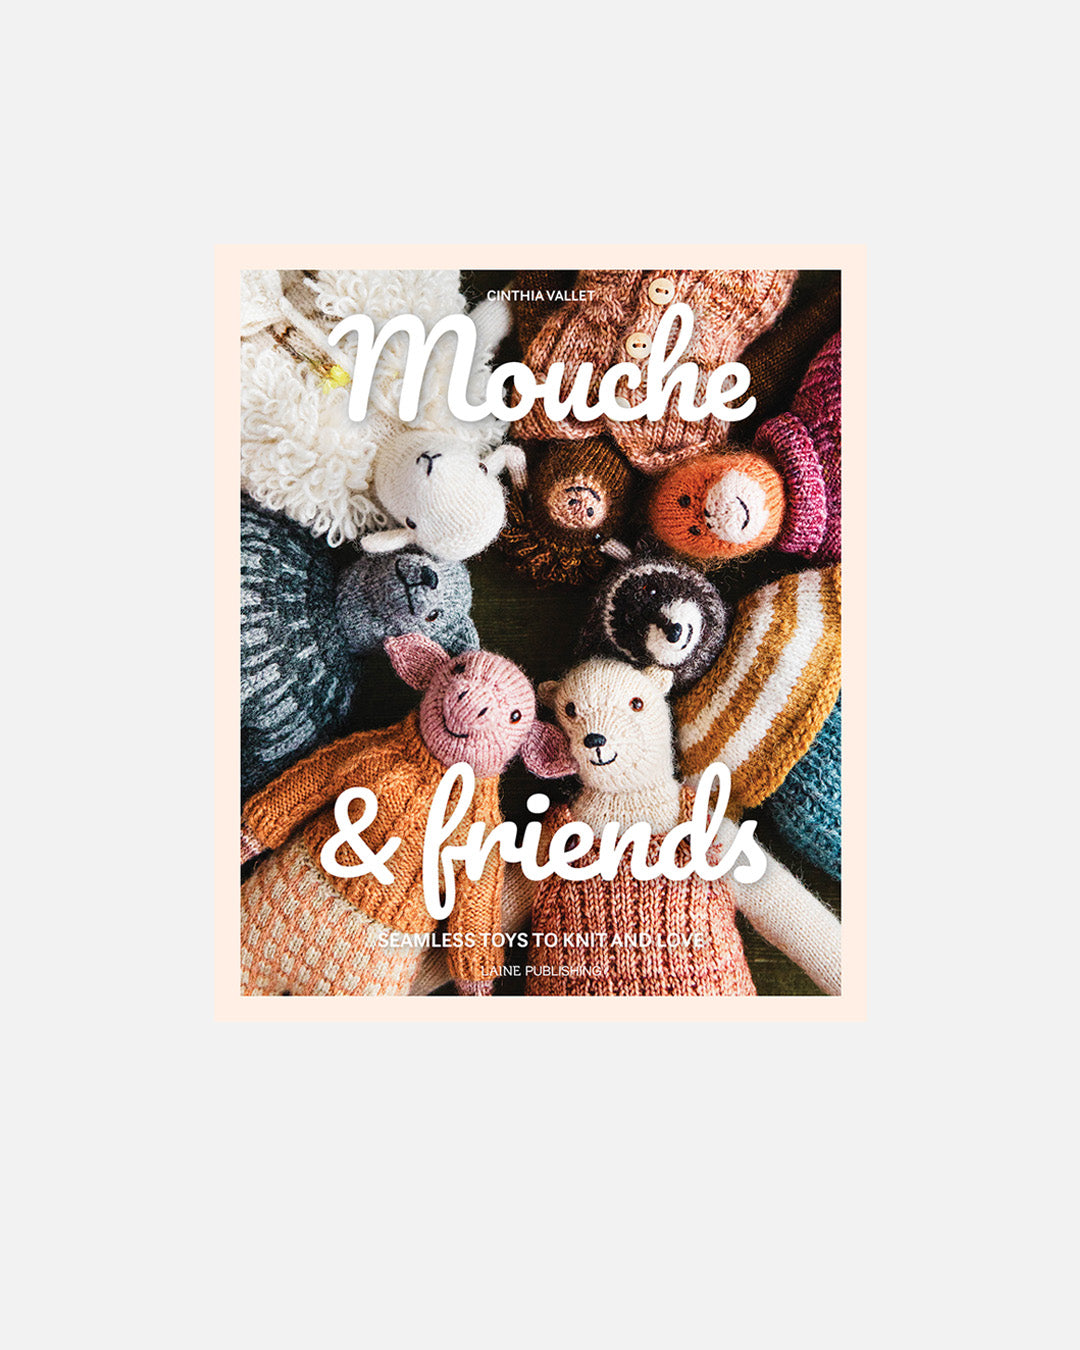 Mouche & Friends